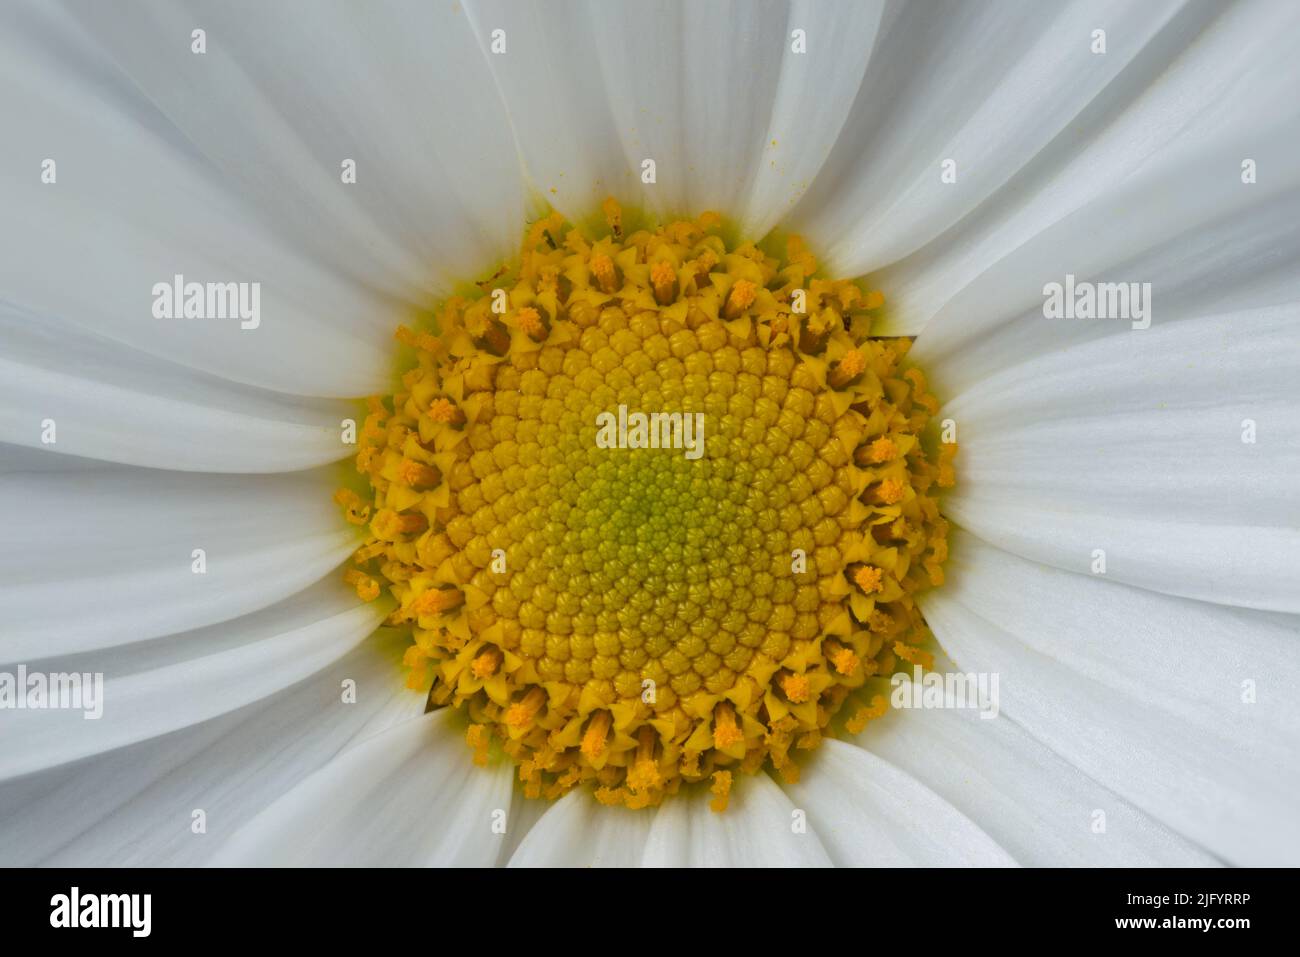 Nahaufnahme von gelben Staubgefäßen weißer Gänseblümchen. Extreme Vergrößerung mit Blütenblättern, Anthern und Staubgefäßen Stockfoto